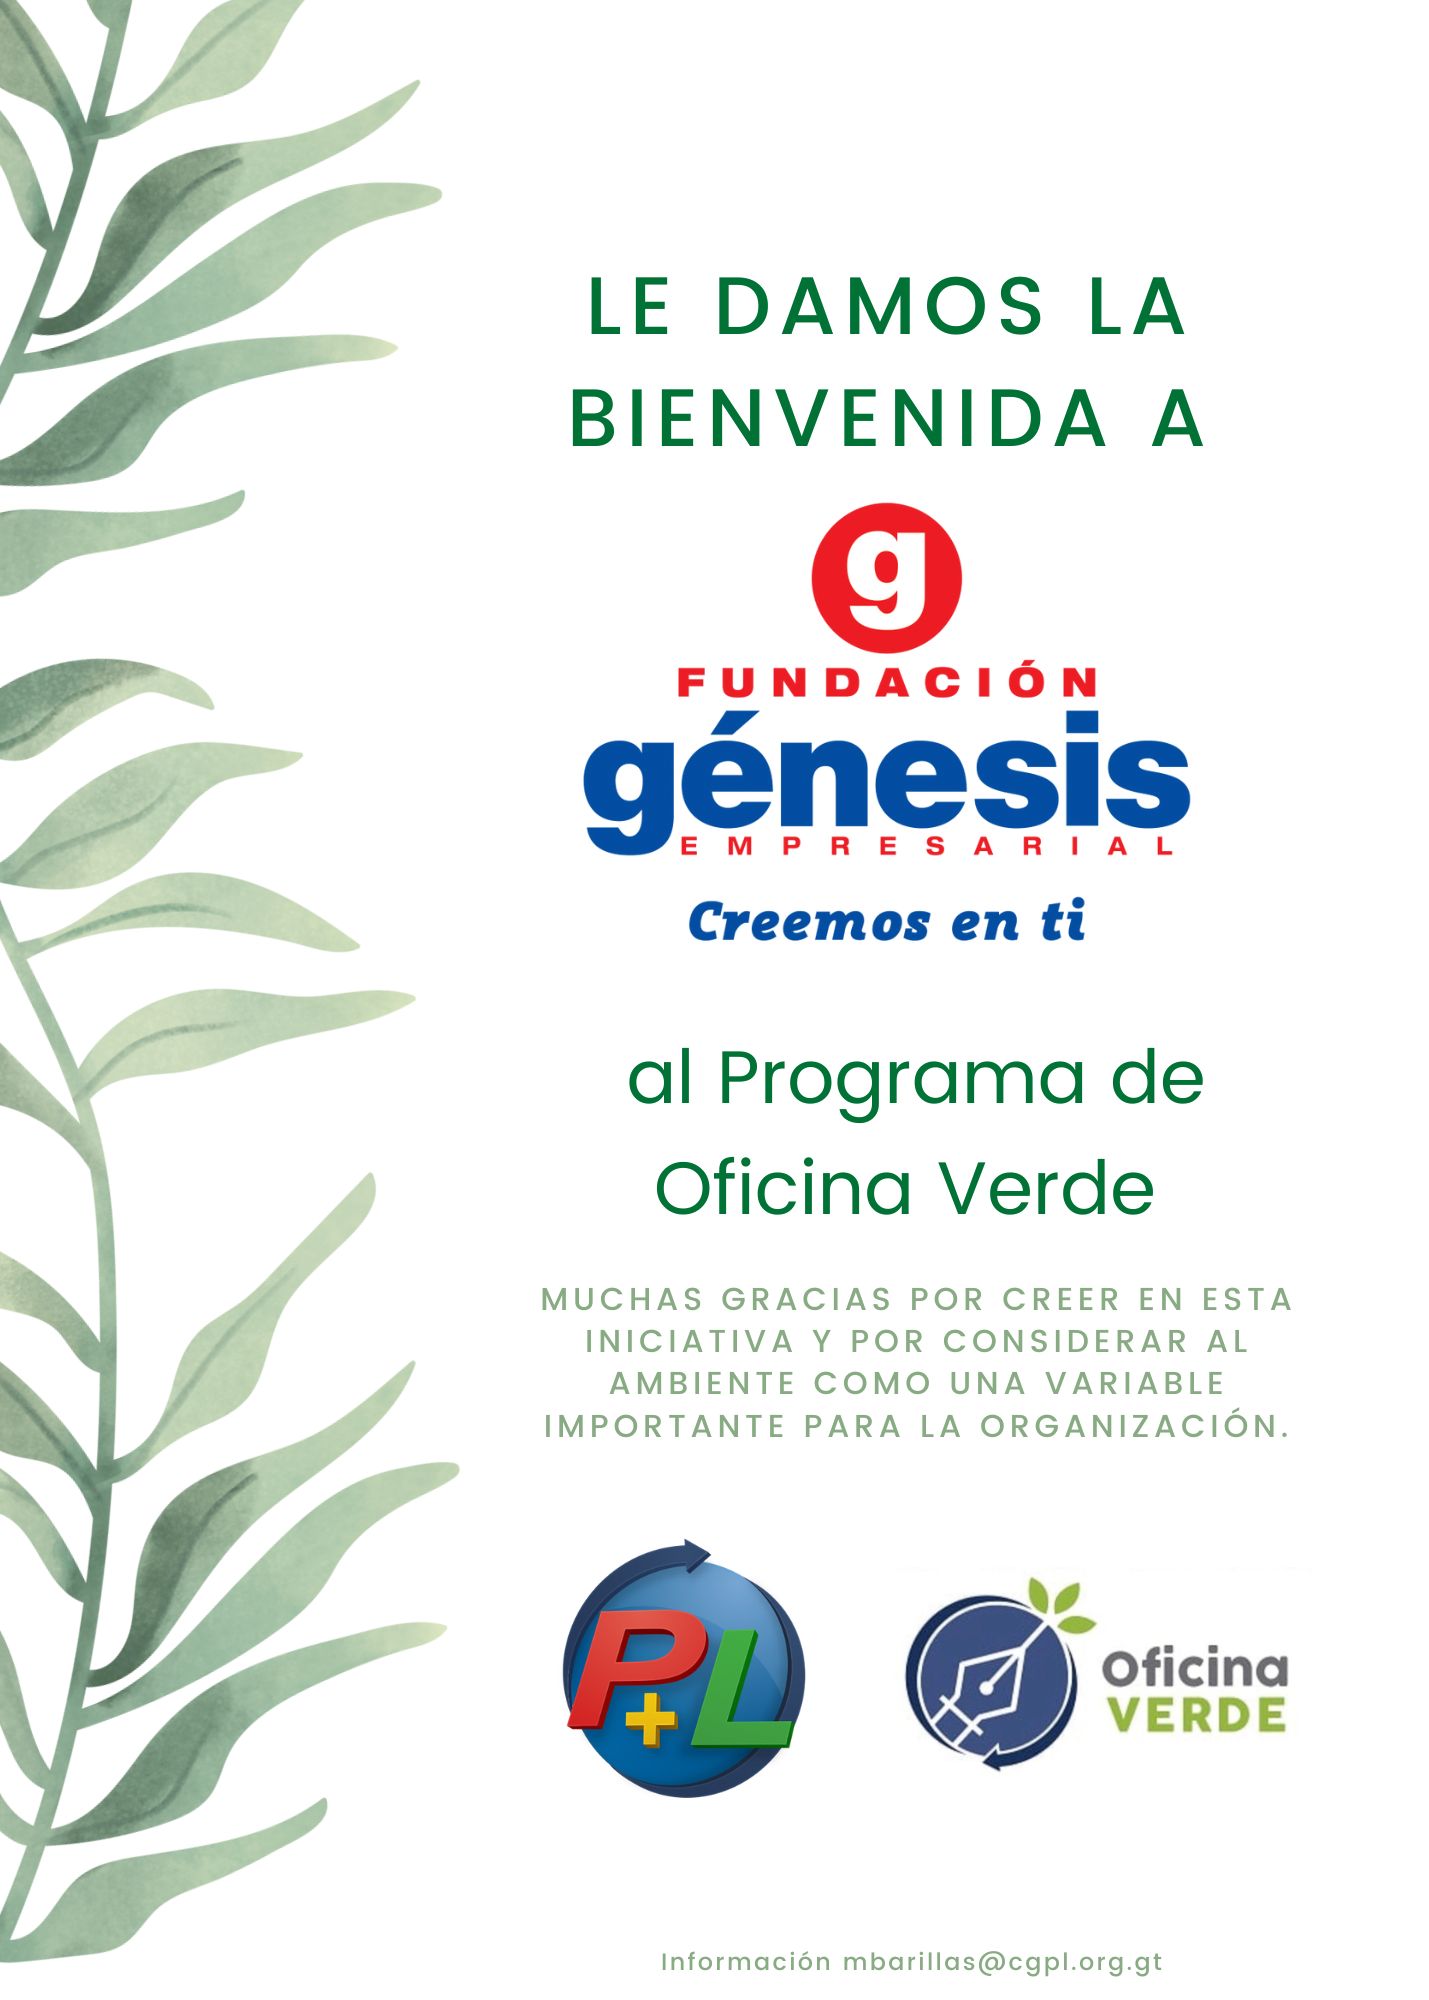 Le Damos La Cordial Bienvenida A Fundación Génesis Empresarial Al Programa De Oficina Verde